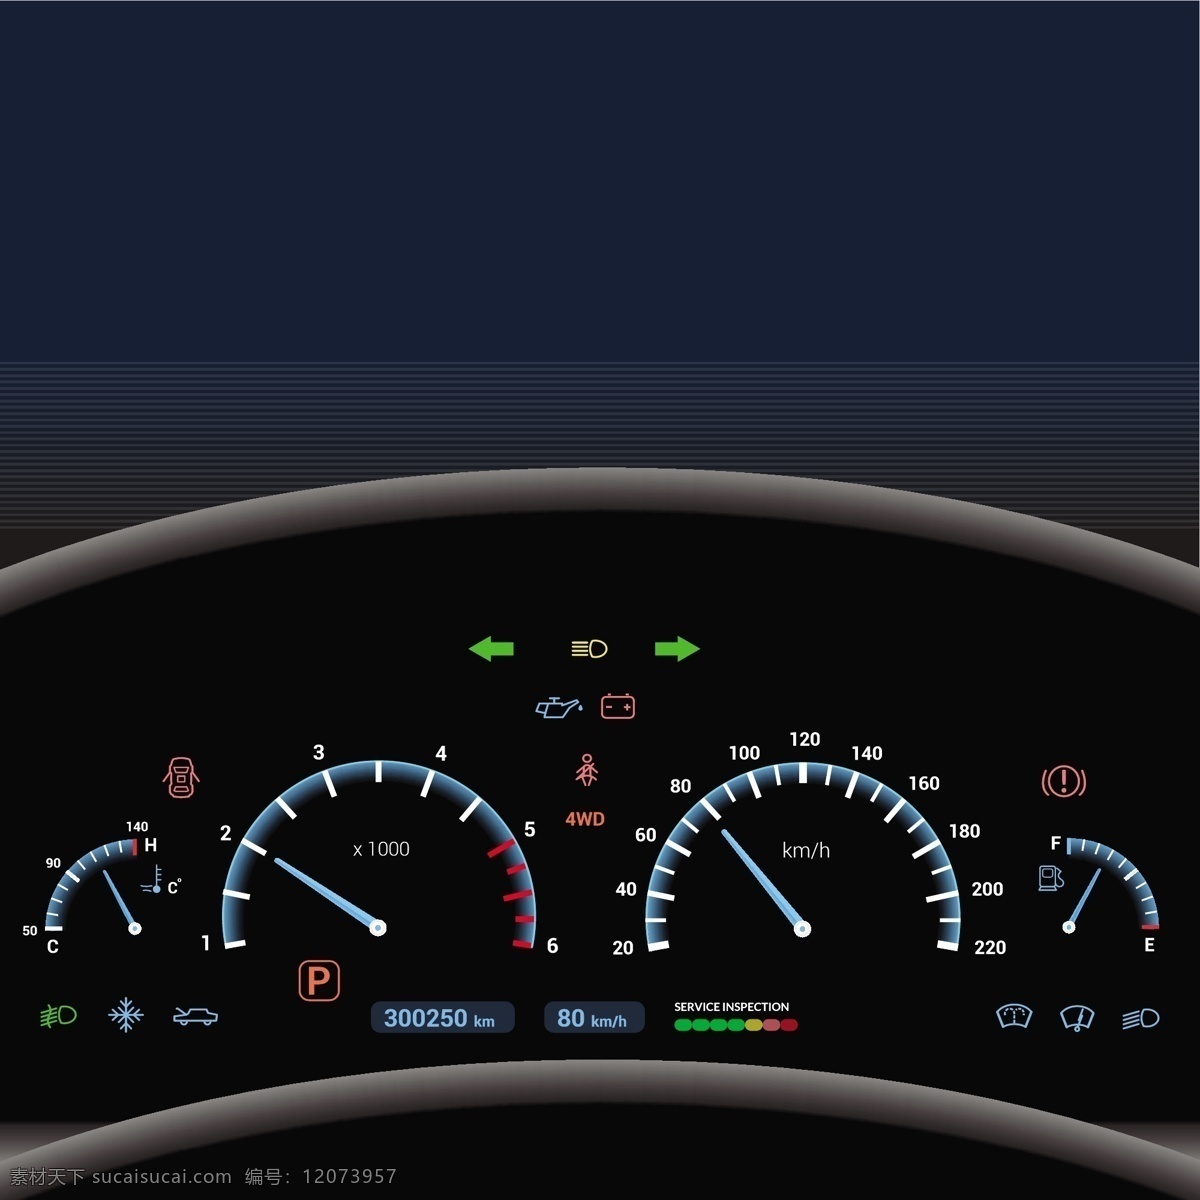 仪表板 背景 颜色 信号 汽车 技术 图表 速度 连接 电源 符号 快速 元素 速度表 进步 仪表 面板 测量 水平 评级 仪器